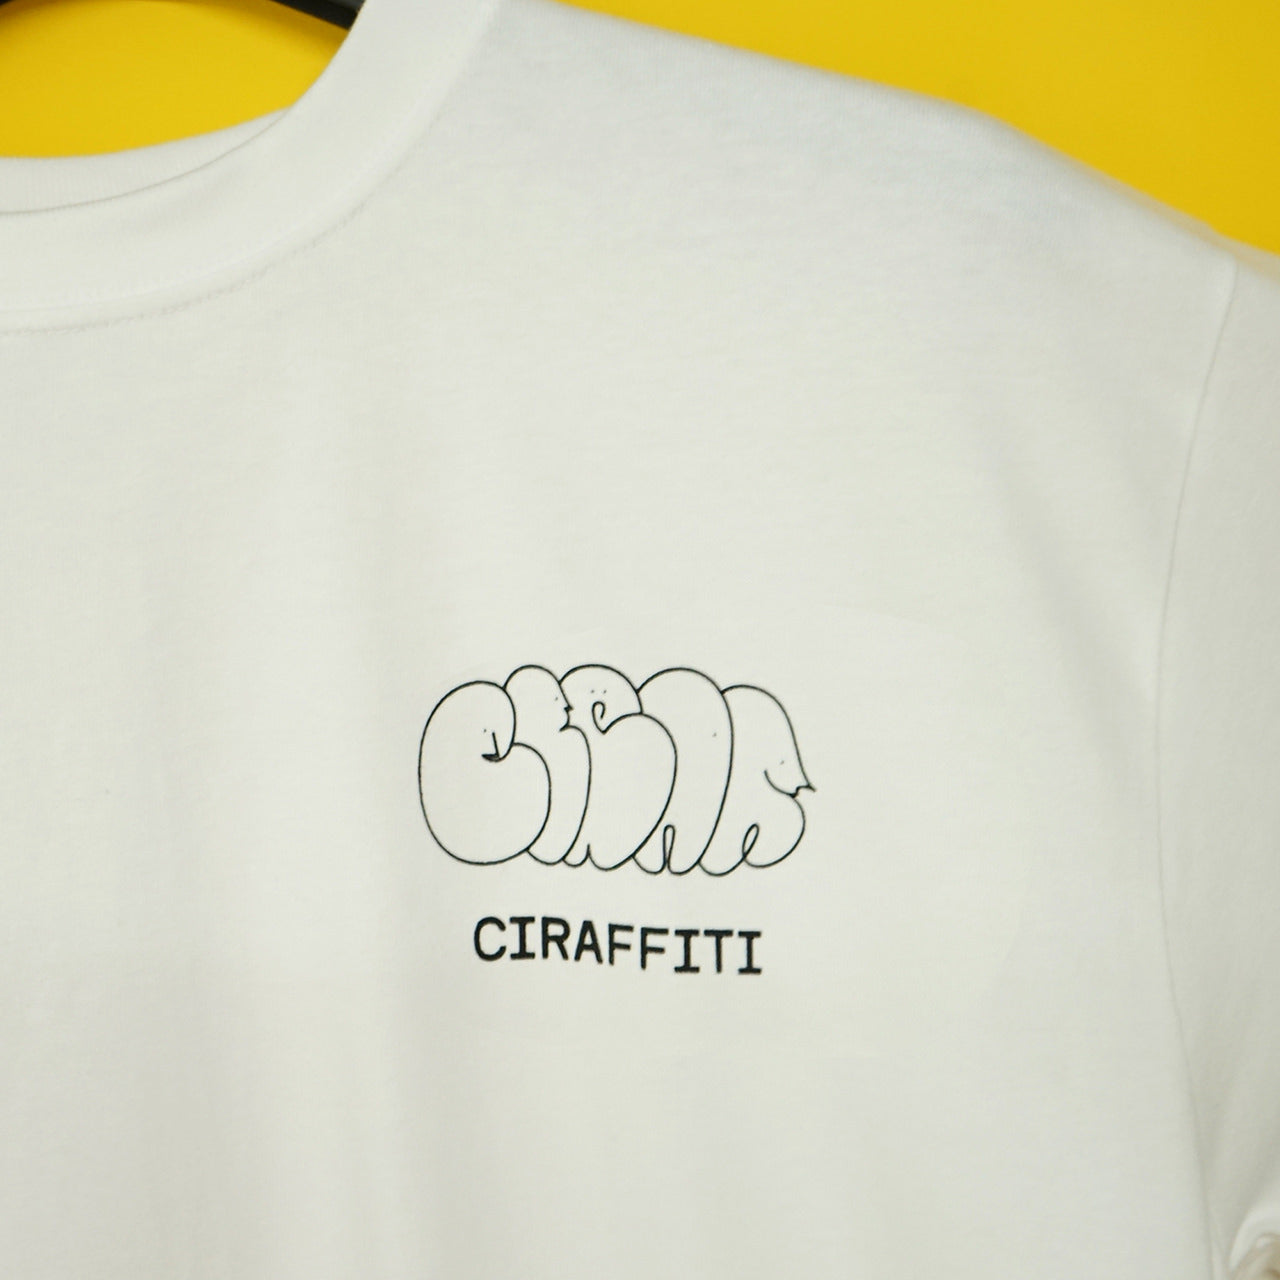 CIRAFFITI Original T-shirt